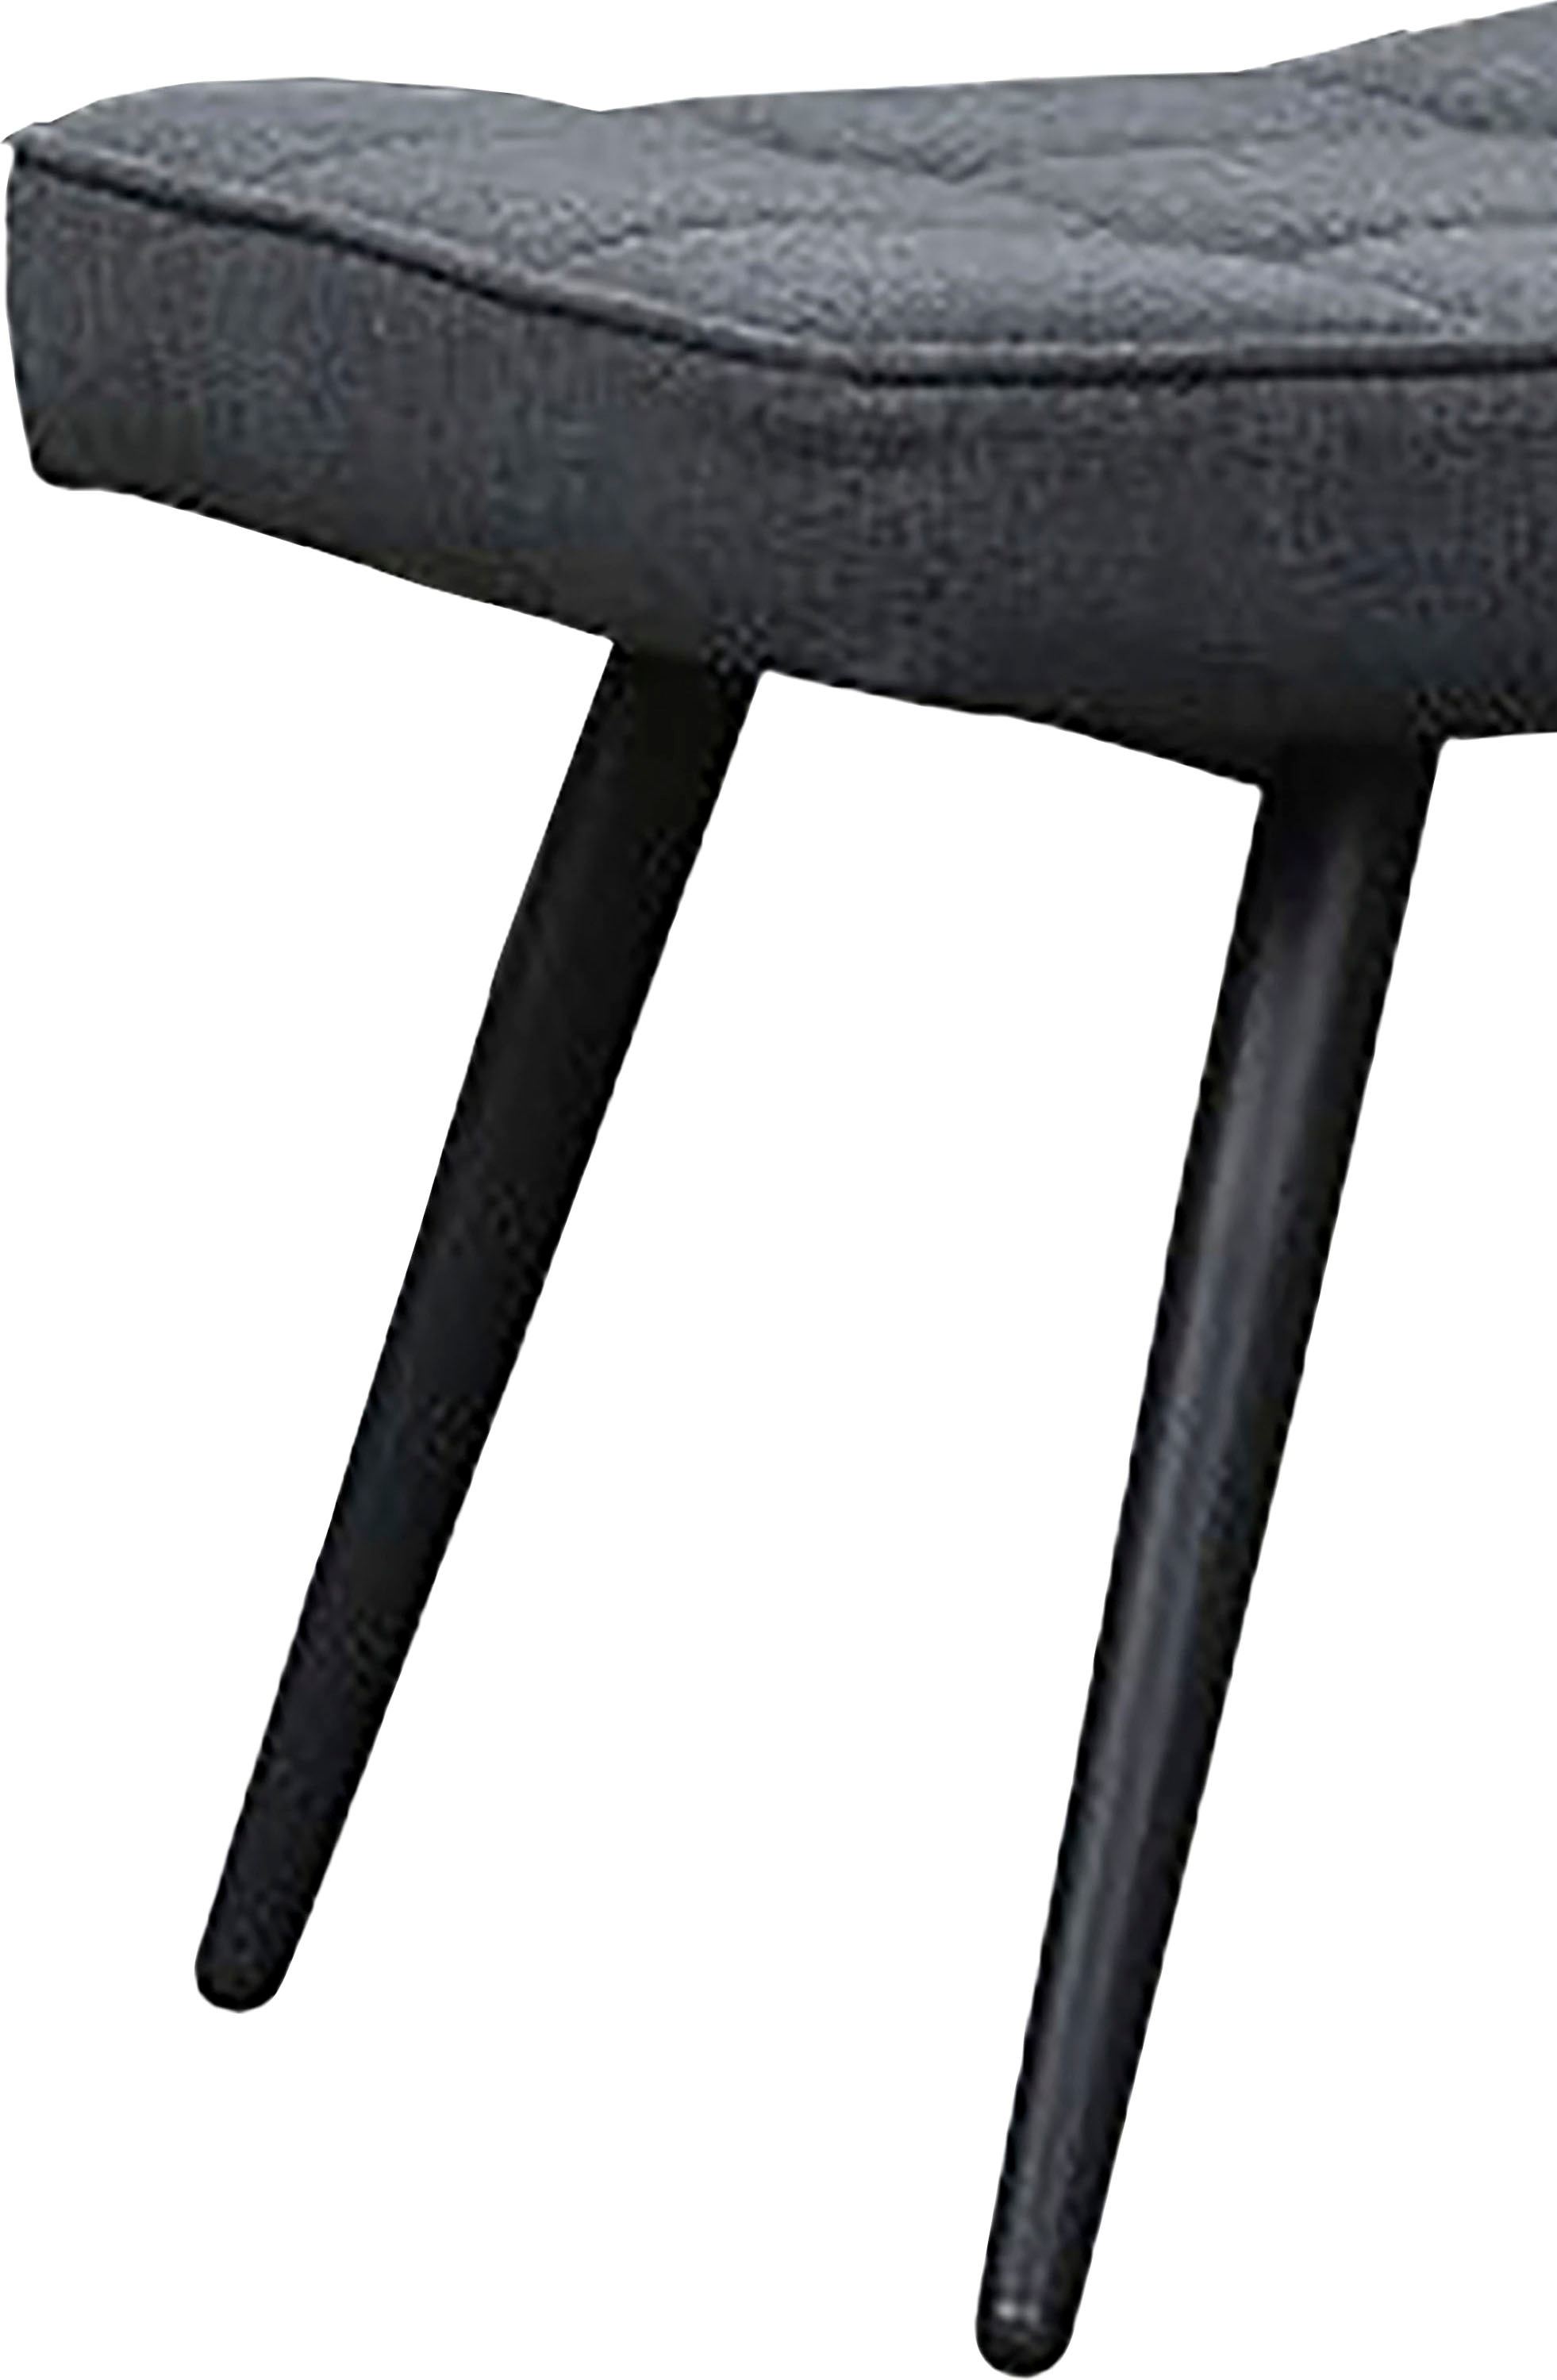 byLIVING Sessel »Uta«, (1 St.), in Cord, Samt oder Webstoff günstig kaufen